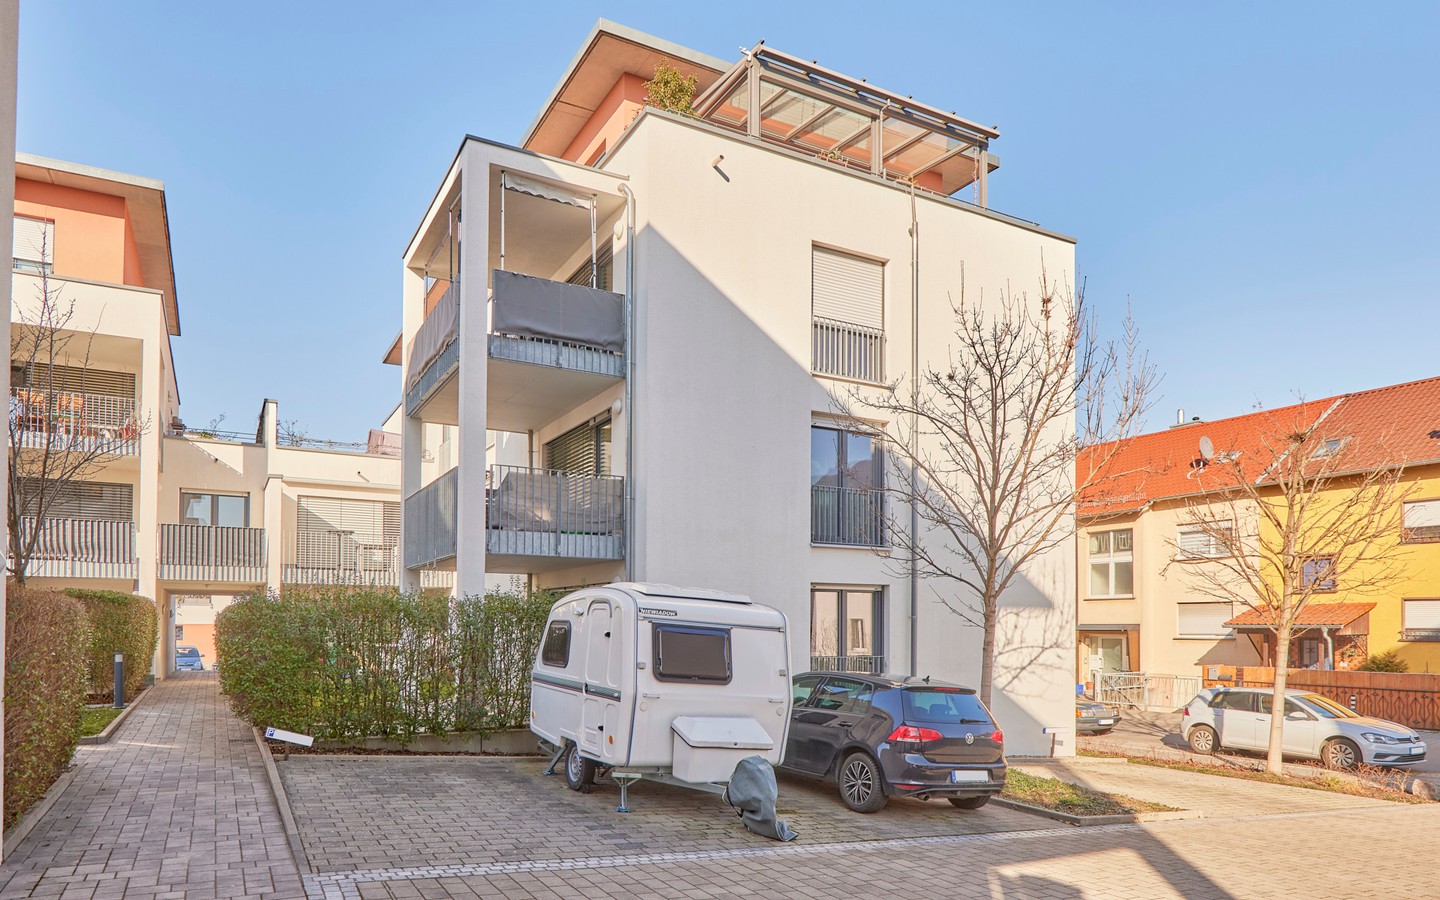 Stellplatzfläche - Modern und barrierefrei wohnen in Schriesheim: 3-Zimmer-EG-Wohnung mit Garten und 2 Stellplätzen